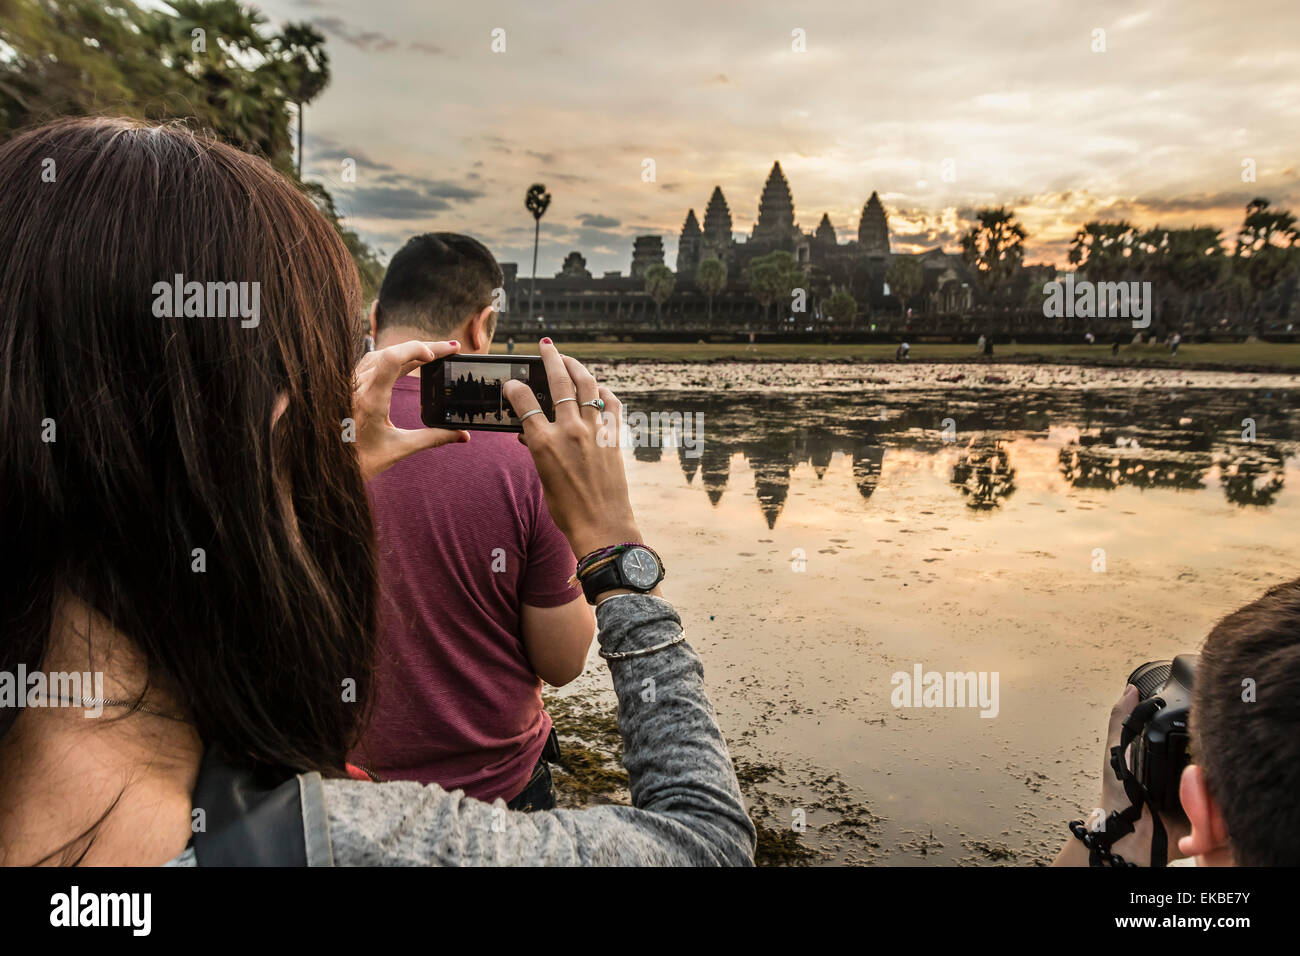 Los turistas fotografiando el amanecer en la entrada oeste de Angkor Wat, Angkor, UNESCO, Siem Reap, Camboya, Indochina, Asia Foto de stock